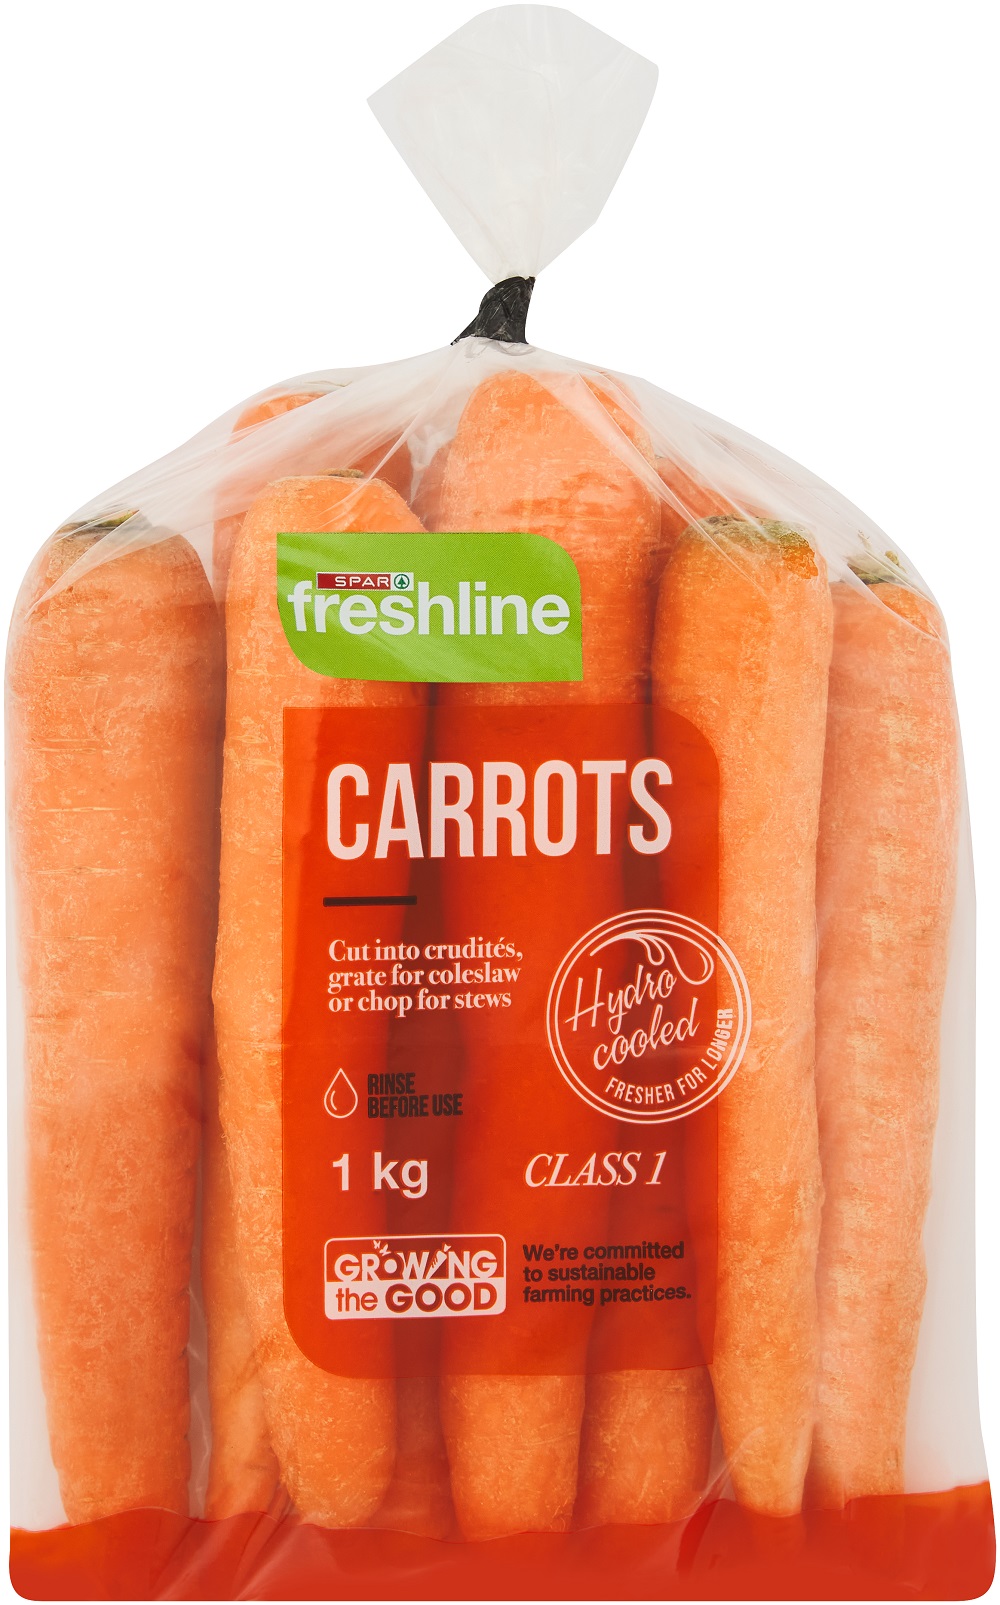 freshline carrots